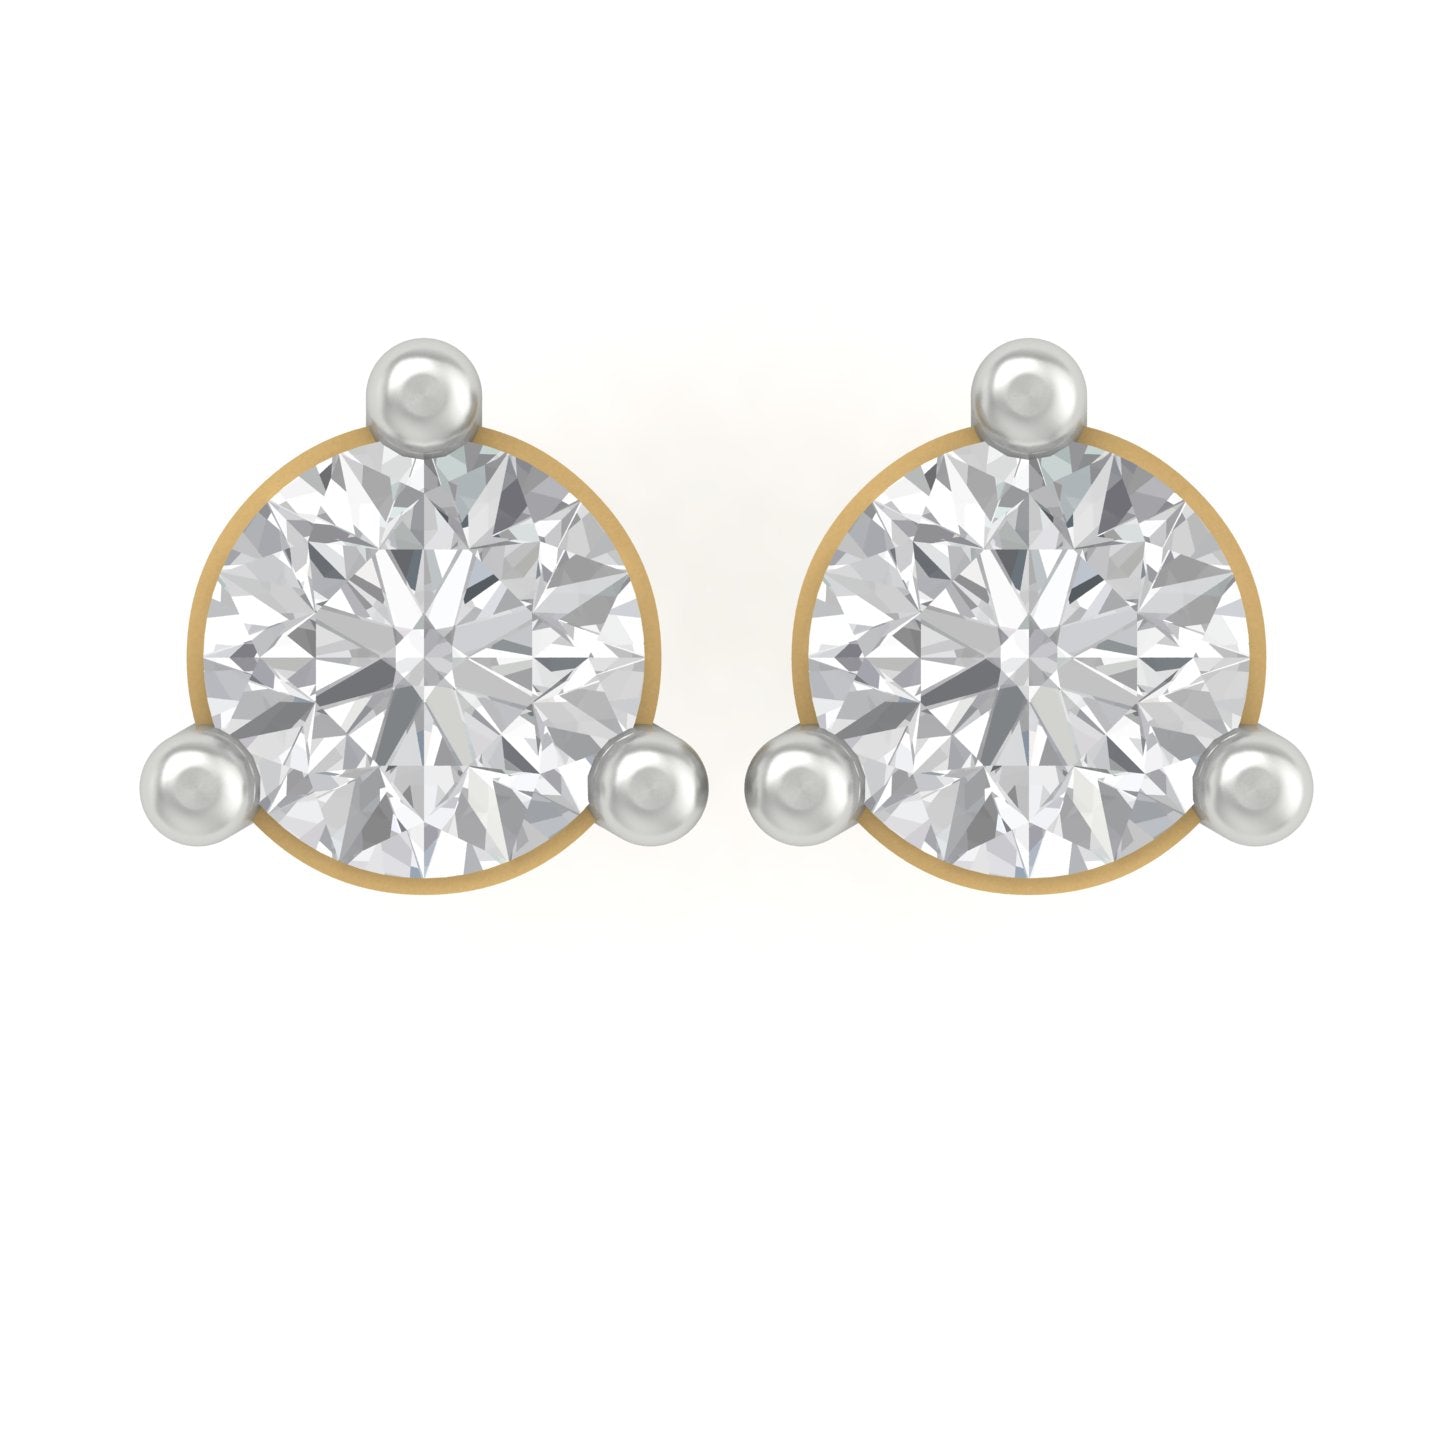 Inzio trendy lab diamond earrings design